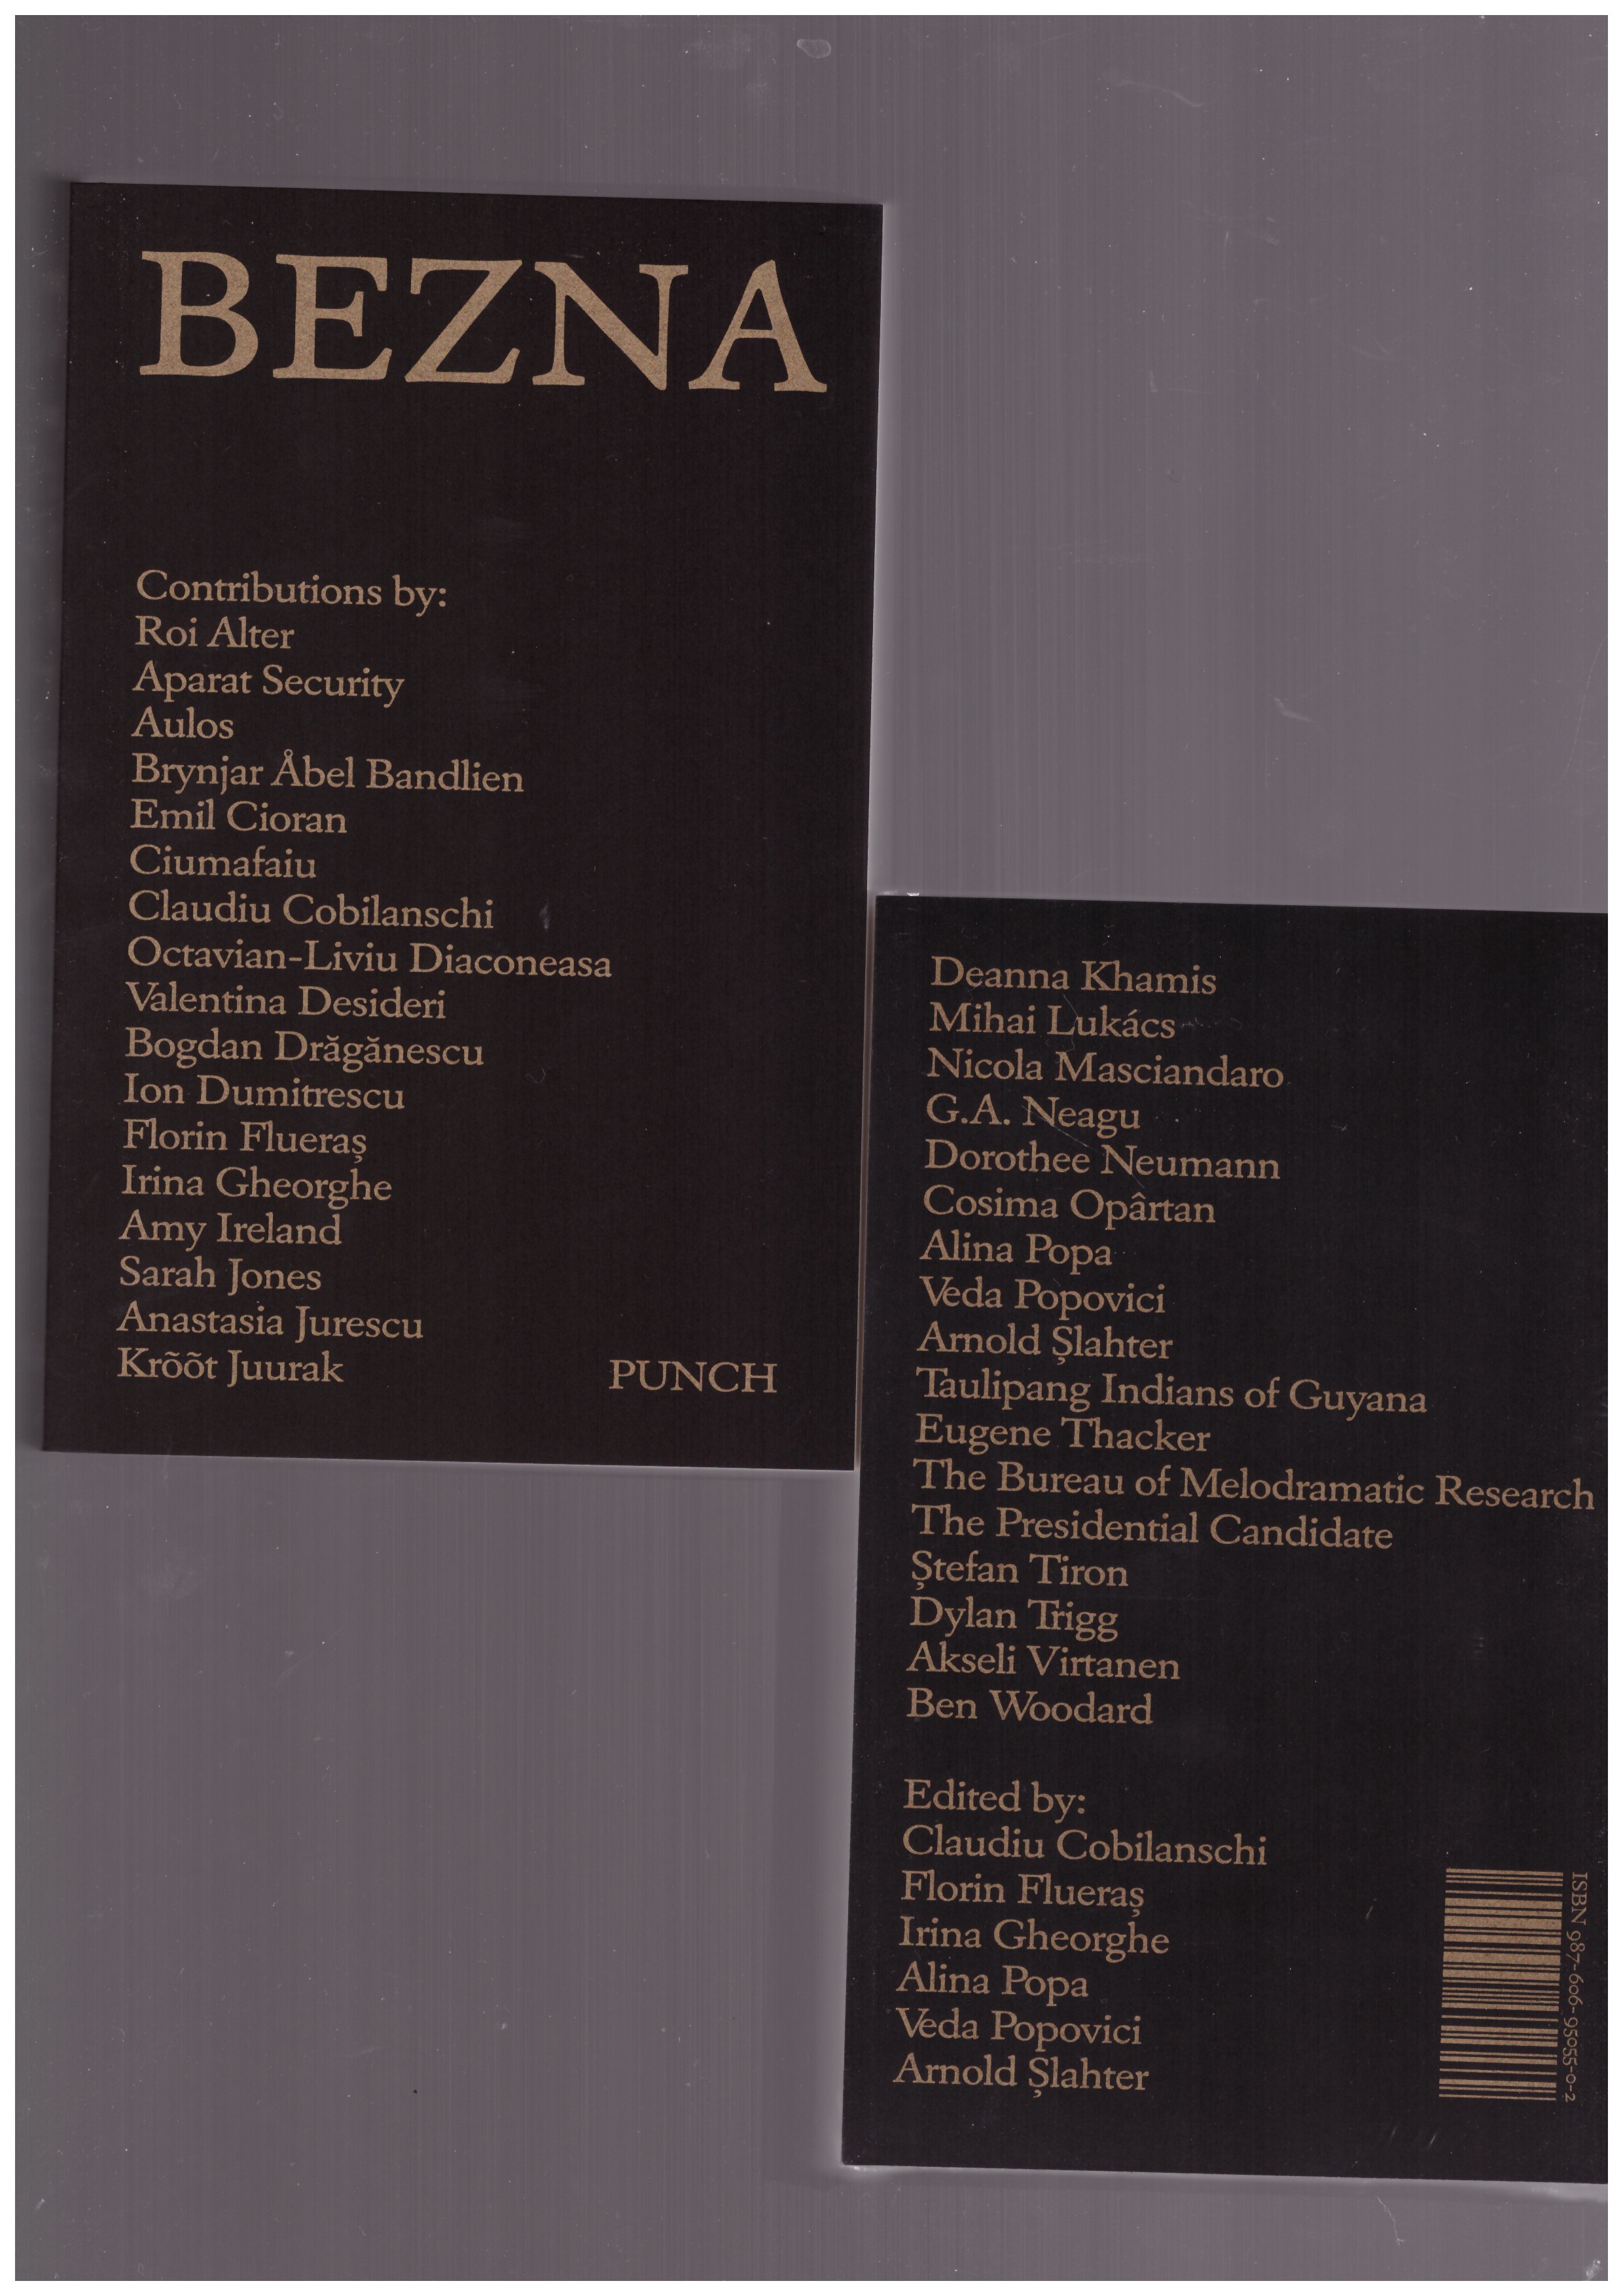 POPA, Alina; FLUERAS, Florin (eds.) - Bezna